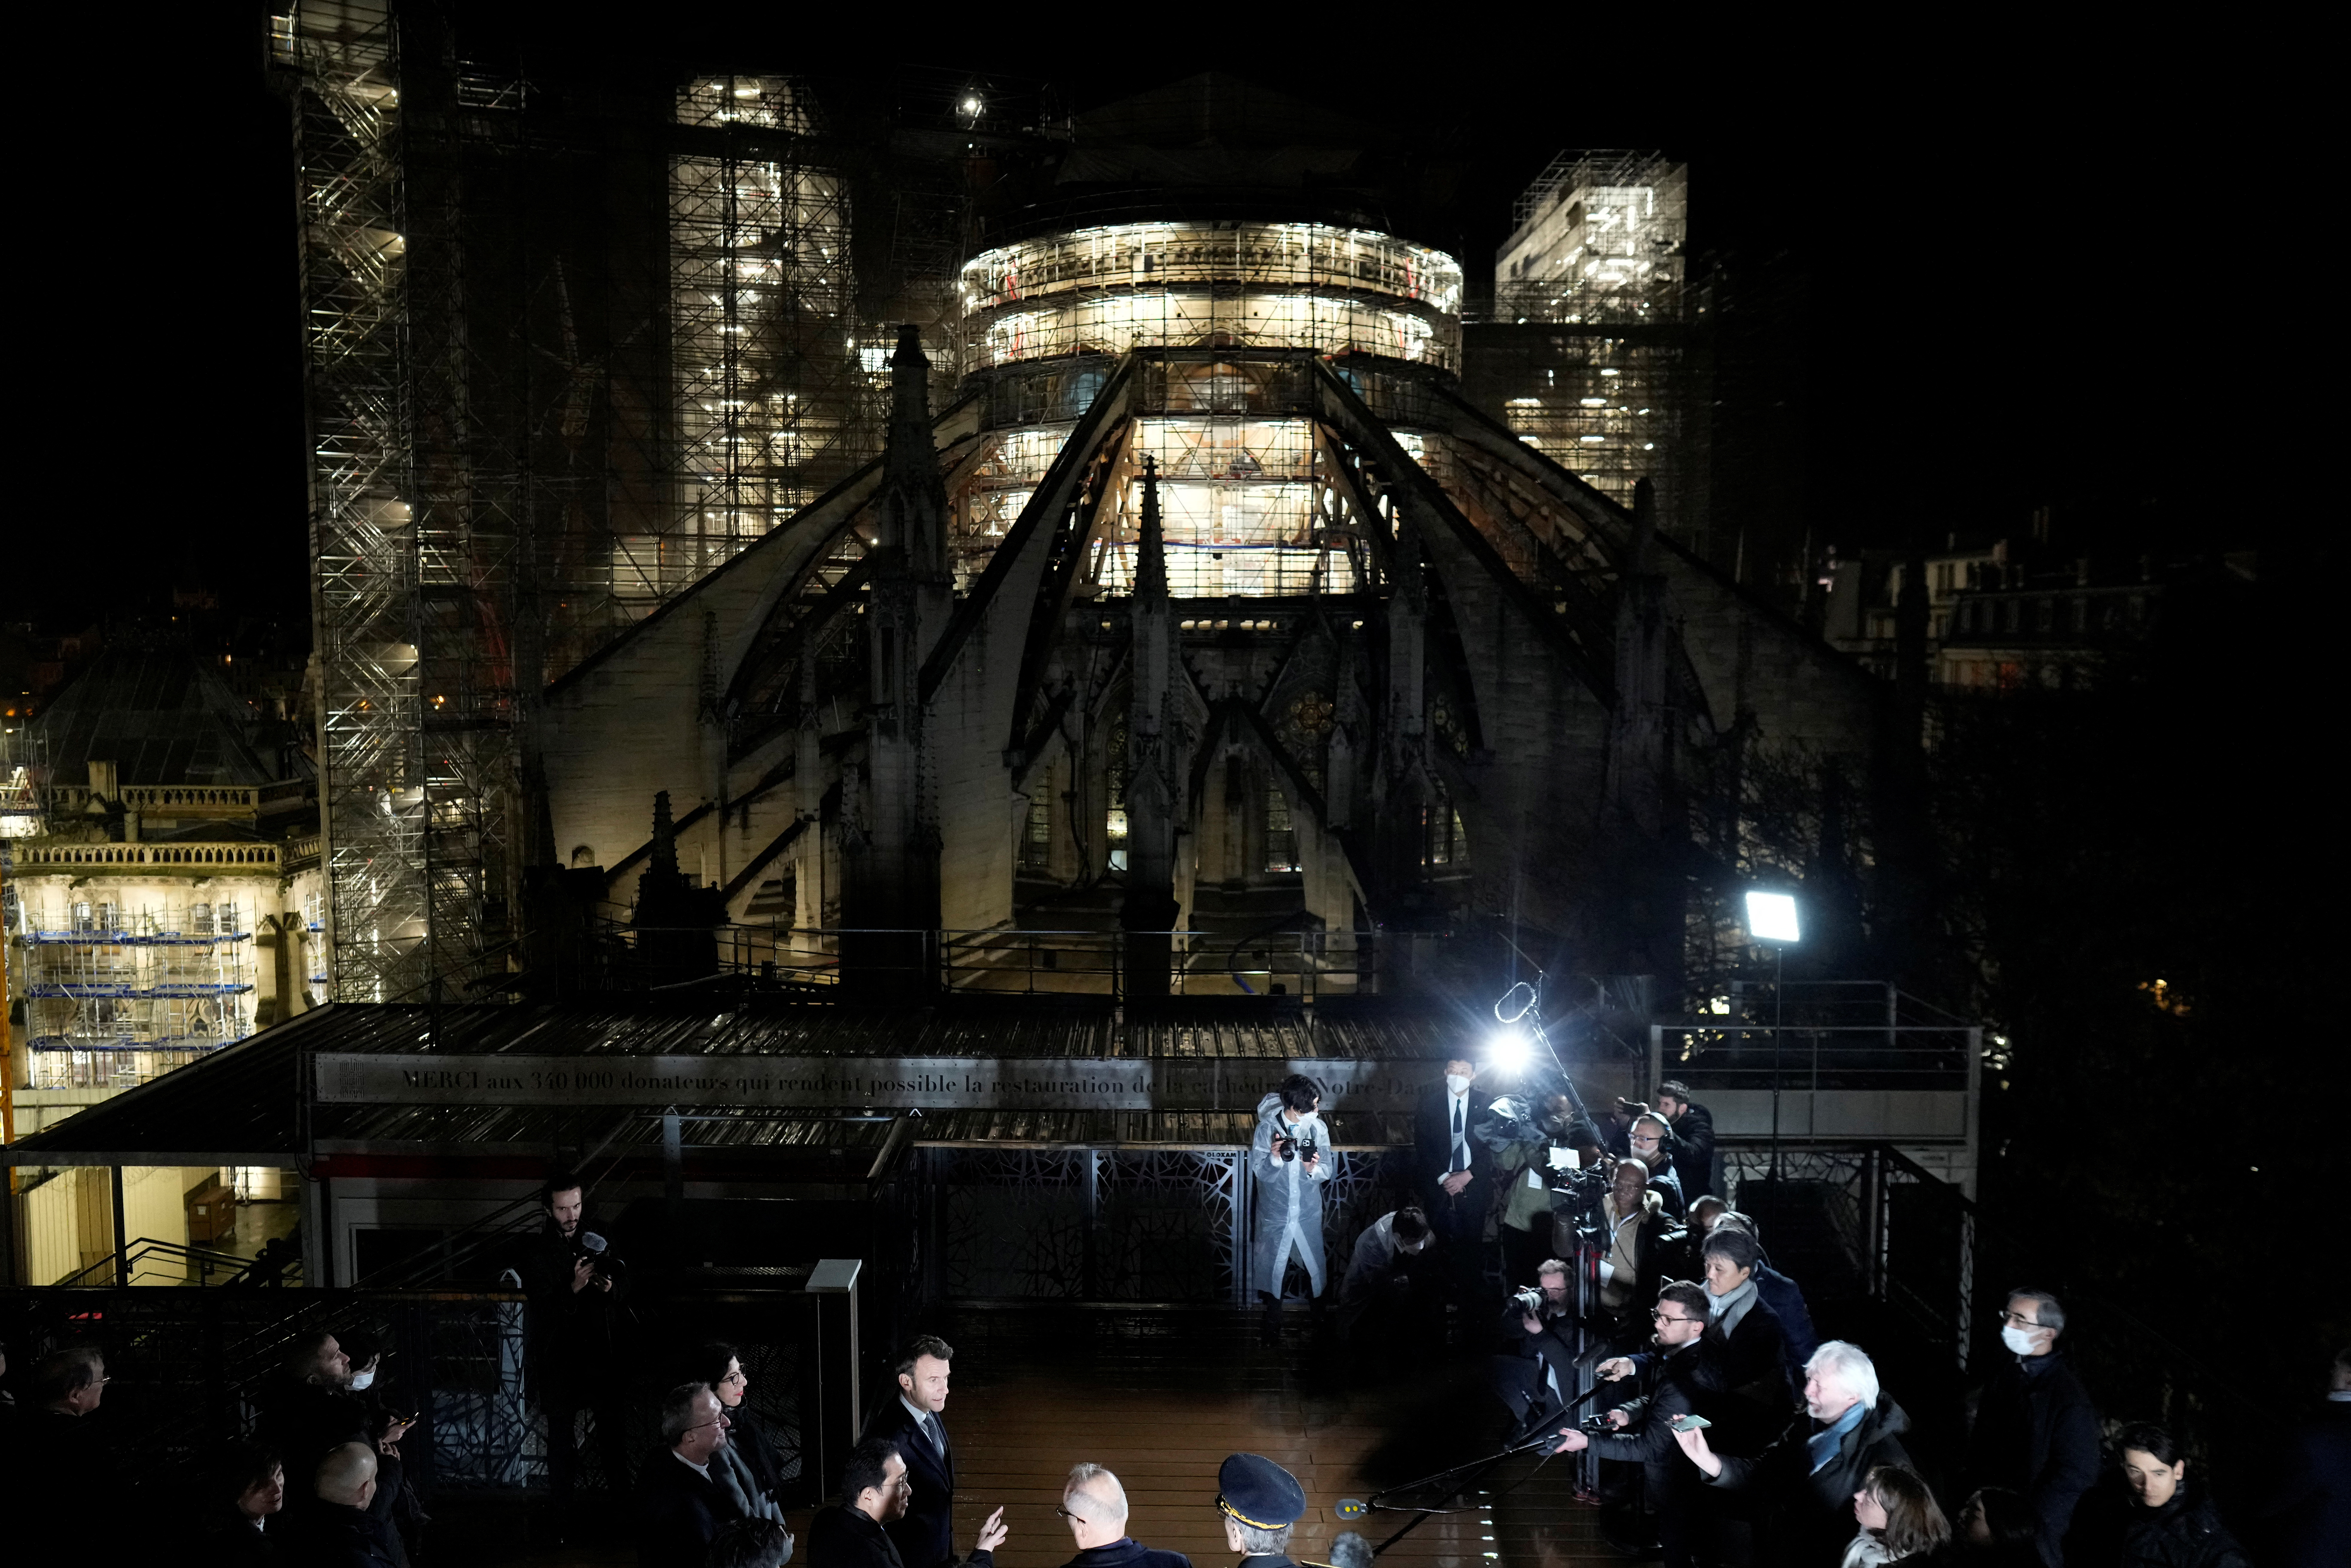 El presidente francés Emmanuel Macron y el primer ministro de Japon Fumio Kishida recorrieron las obras de reconstrucción de Notre Dame, el pasado 9 de enero (Foto: Thibault Camus/Pool via REUTERS)